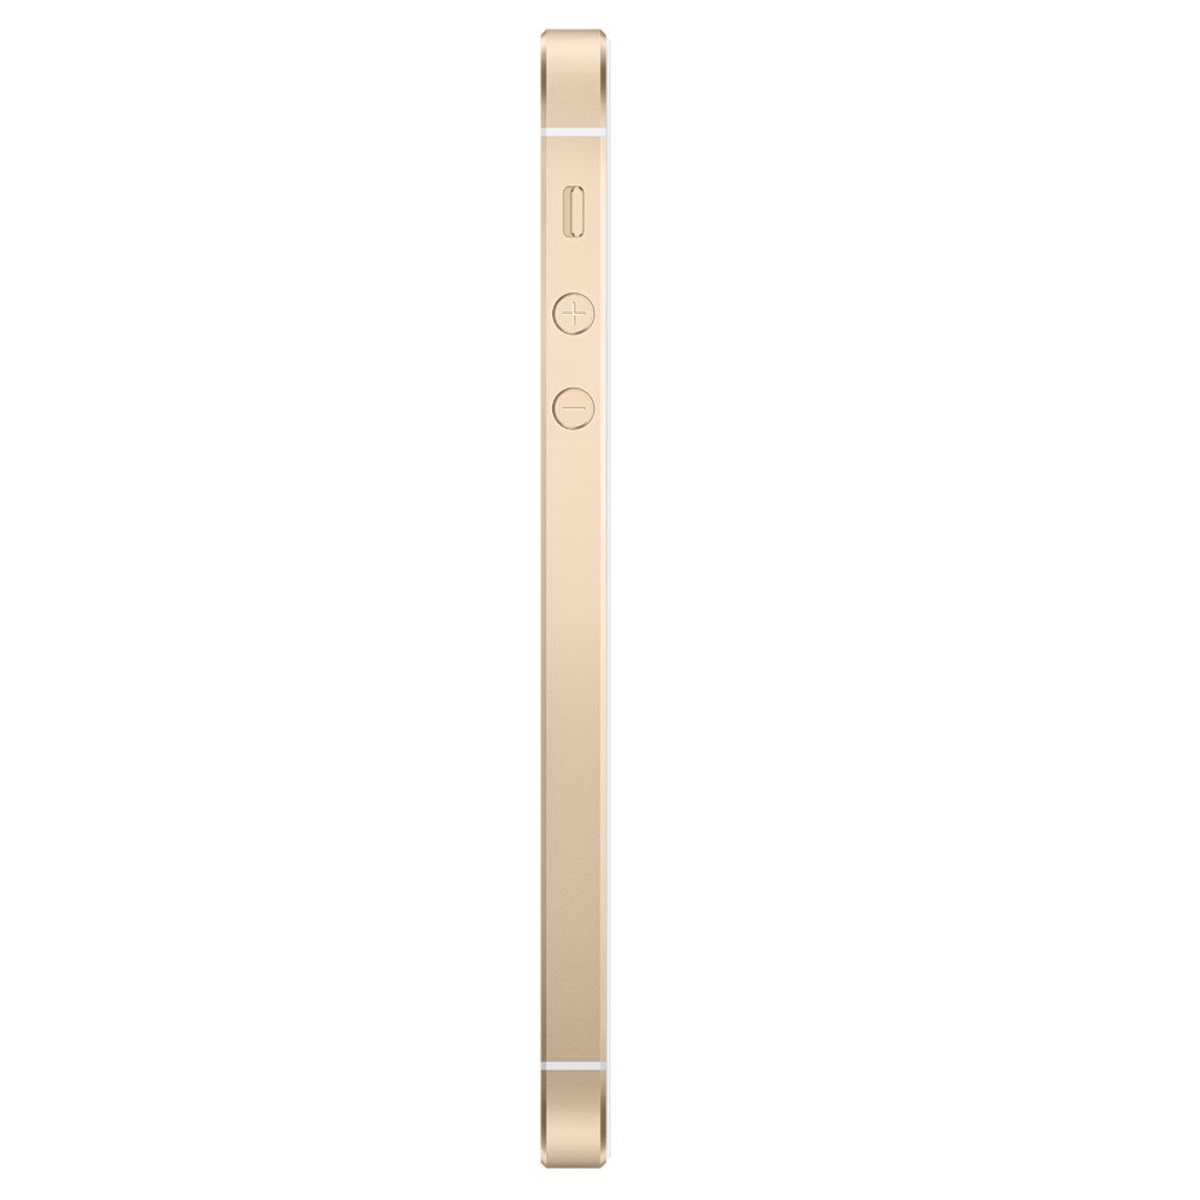 Смартфон Apple iPhone SE 128Gb Gold (A1723)